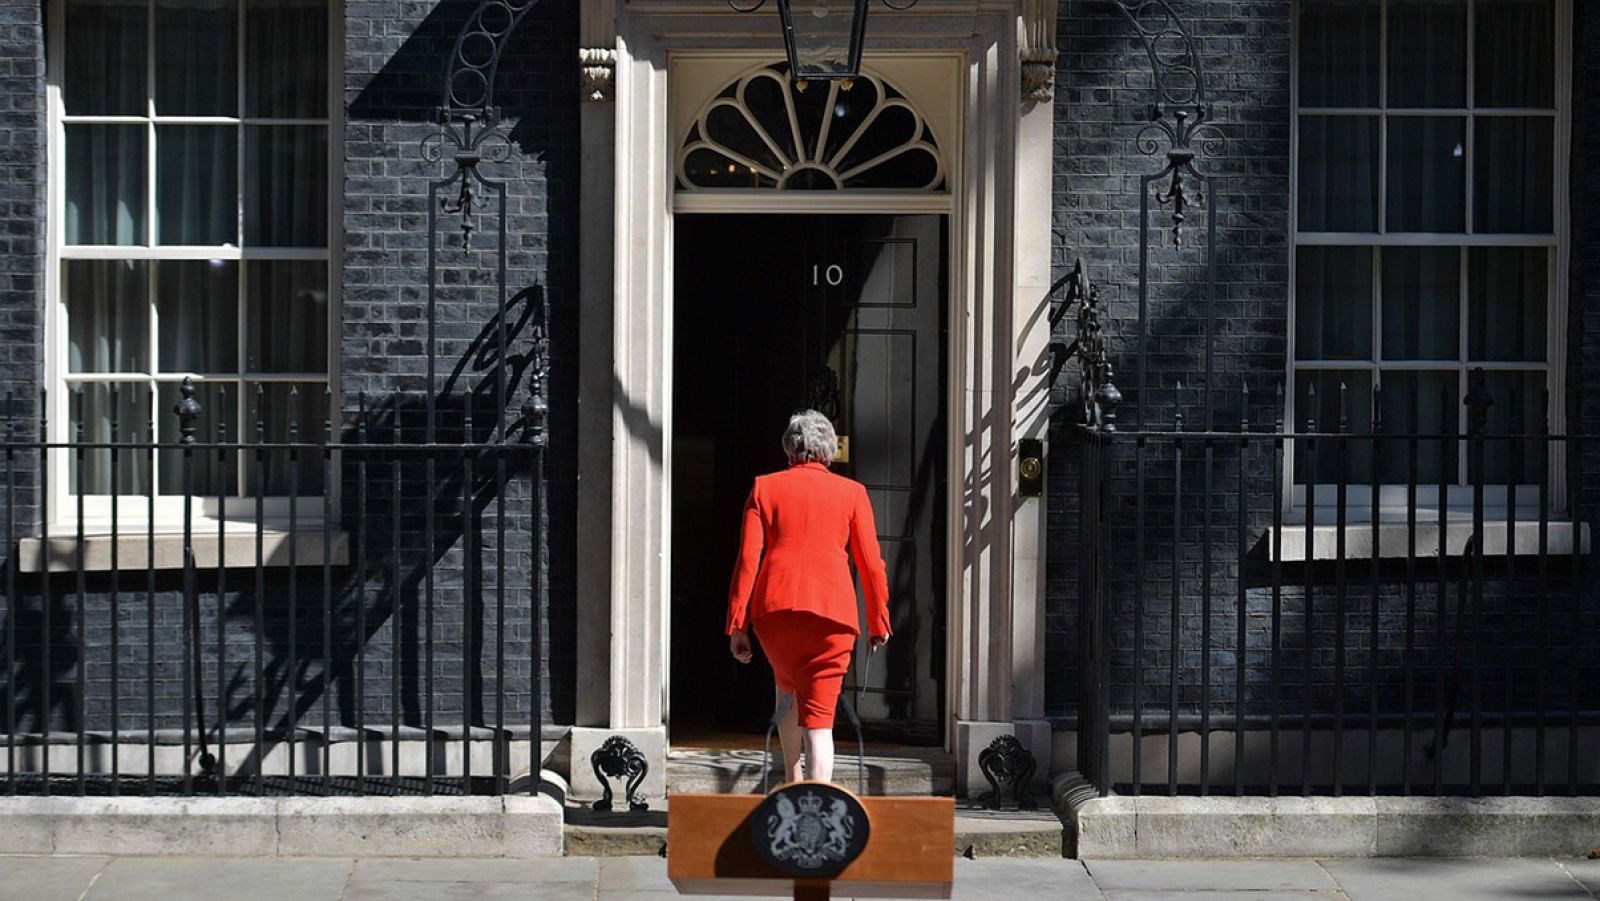 Theresa May vuelve a su residencia en el número 10 de Downing Street, en Londres, tras anunciar su dimisión. Daniel LEAL-OLIVAS / AFP